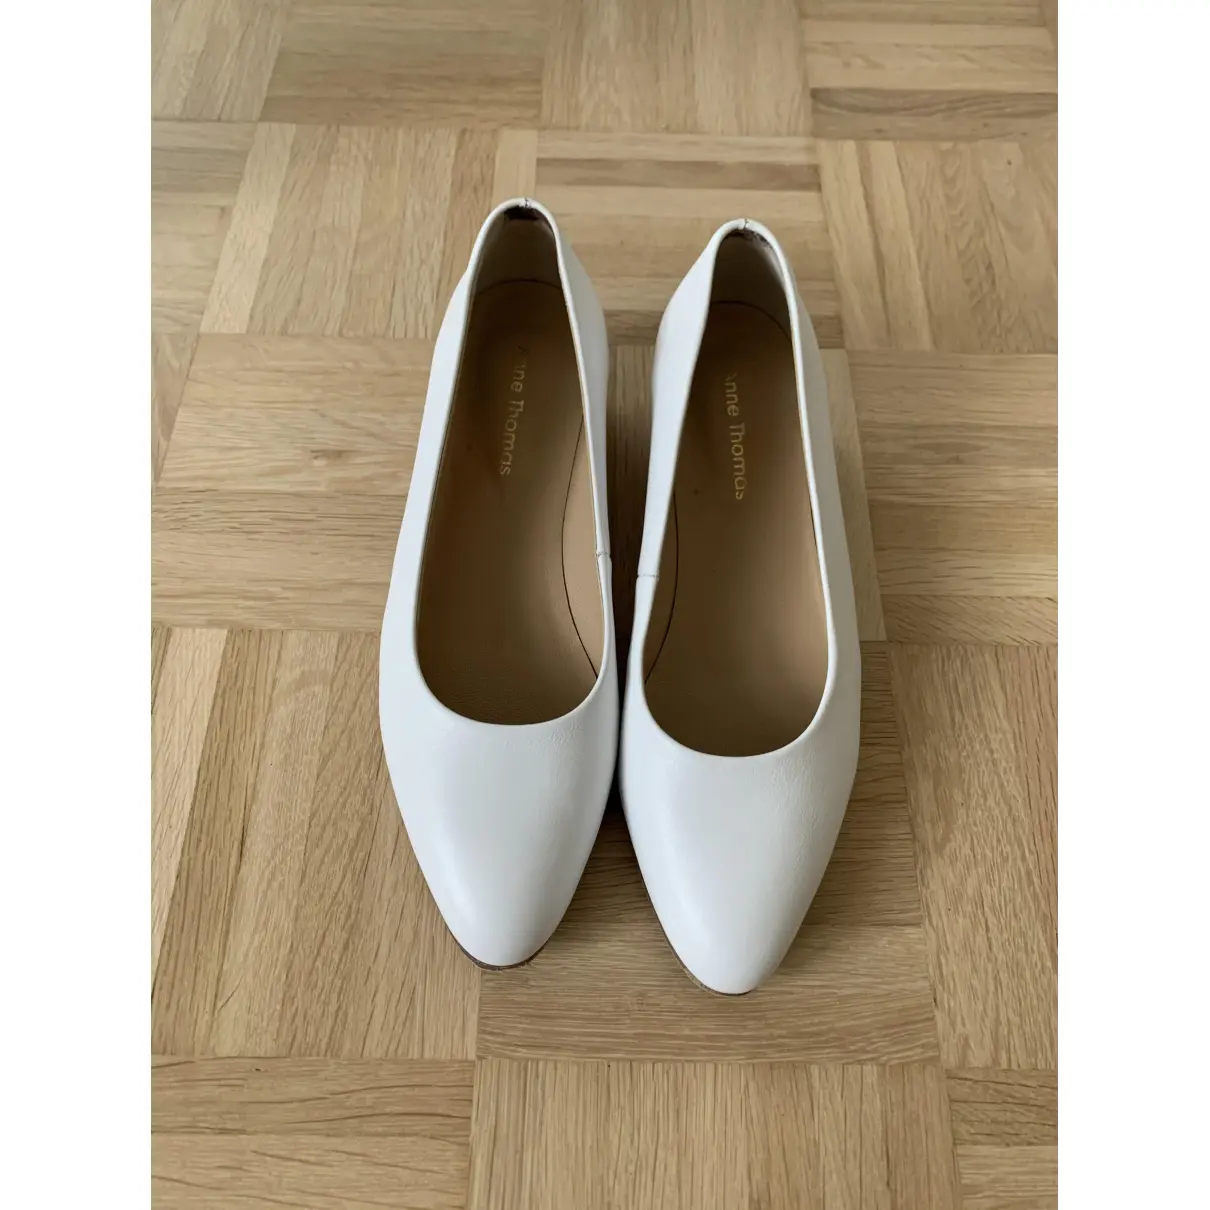 Buy Anne Thomas Leather heels online